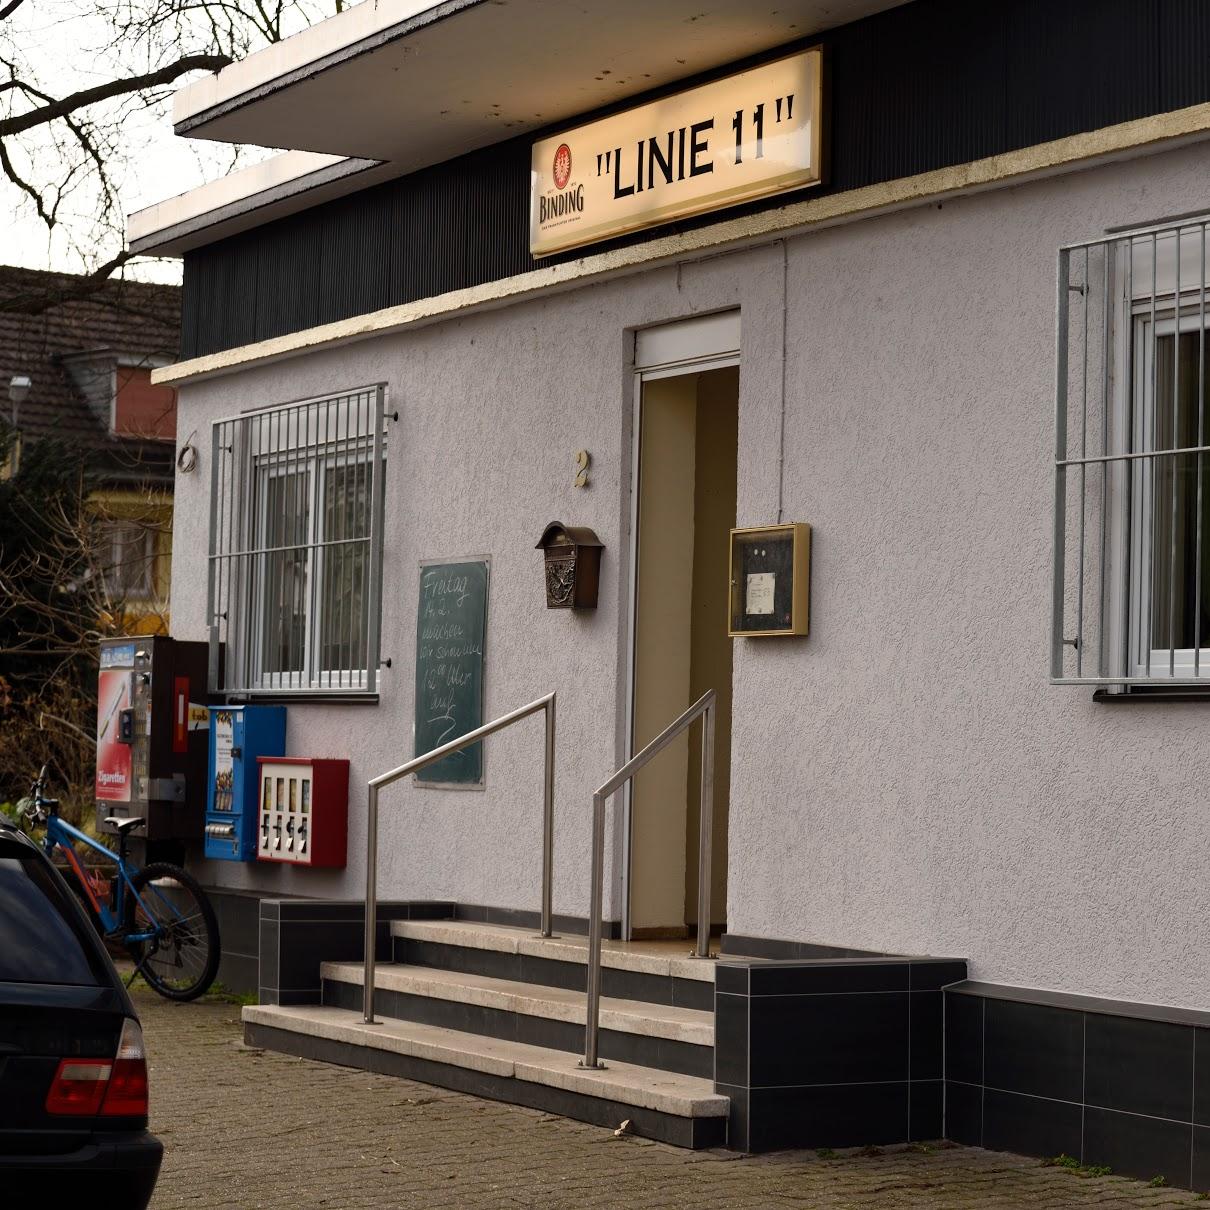 Restaurant "Linie 11" in  Mainz